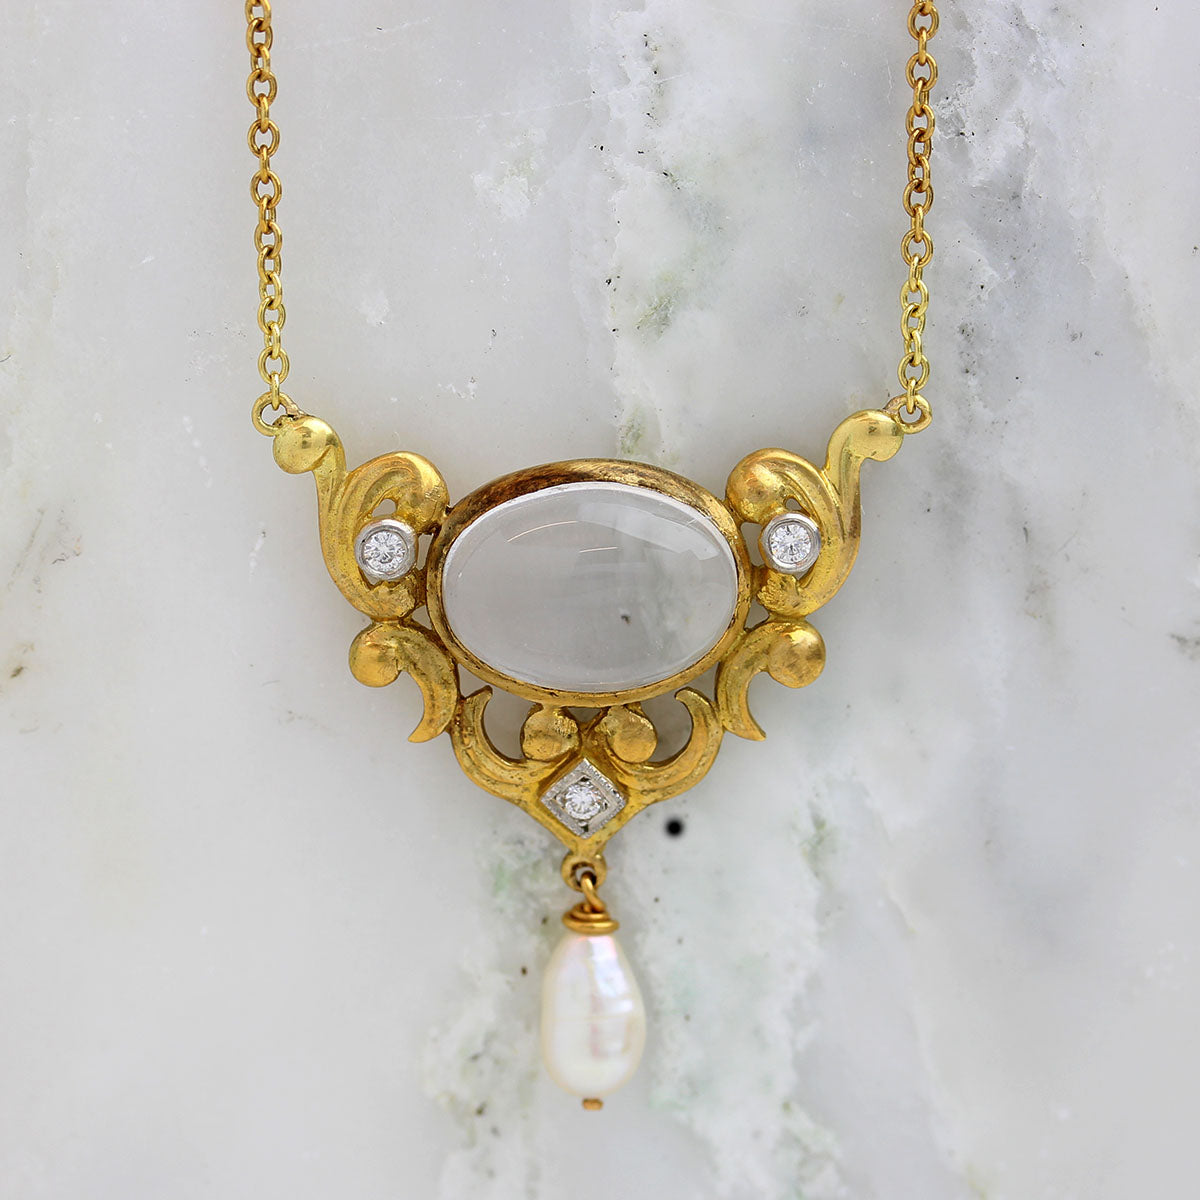 Replica Art Nouveau Pendant necklace set with moonstone #P100-02